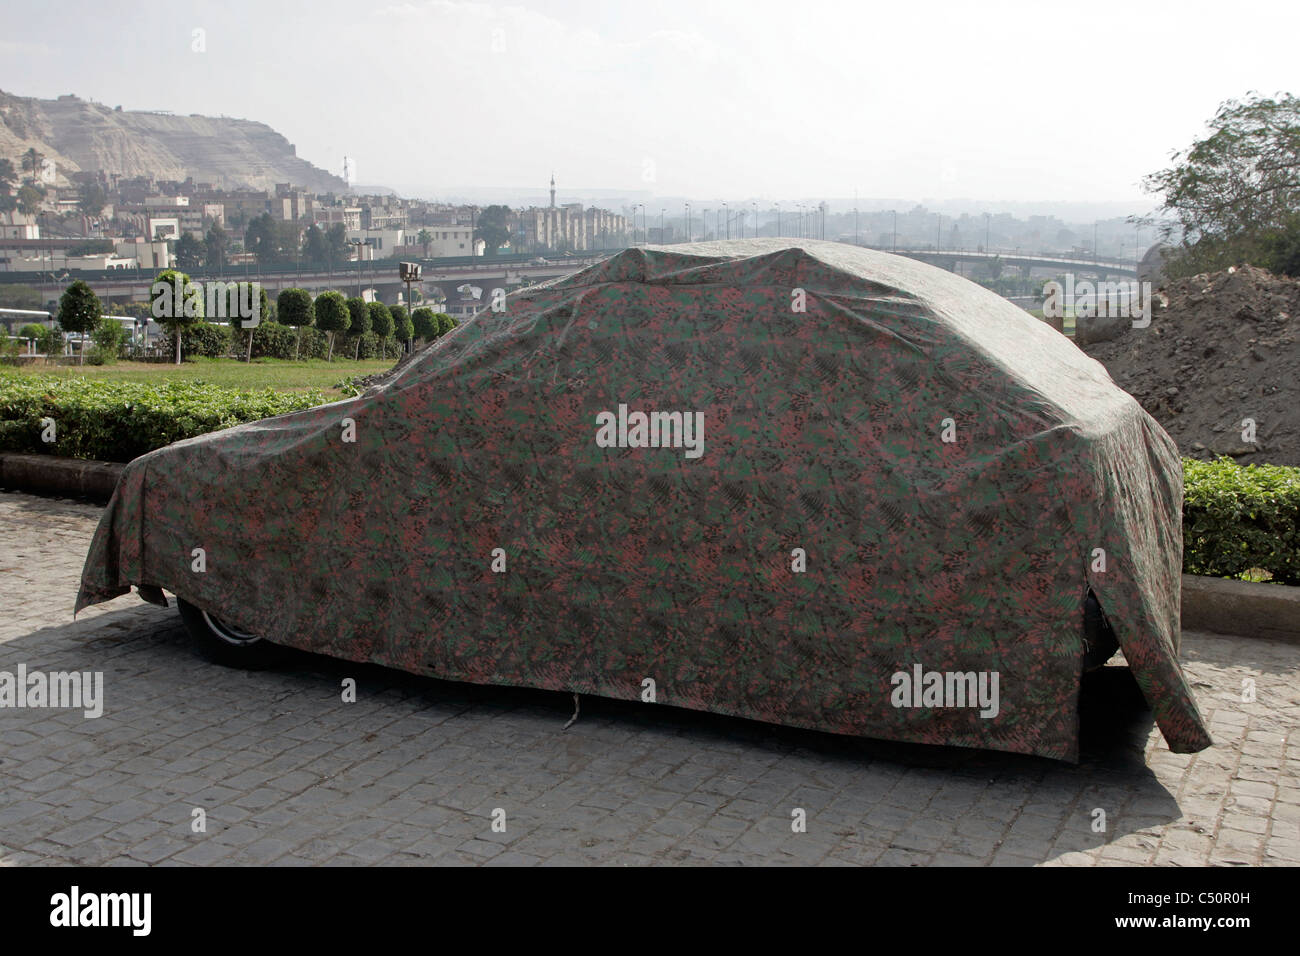 El espectáculo familiar de un parking cubierto en El Cairo, Egipto Foto de stock